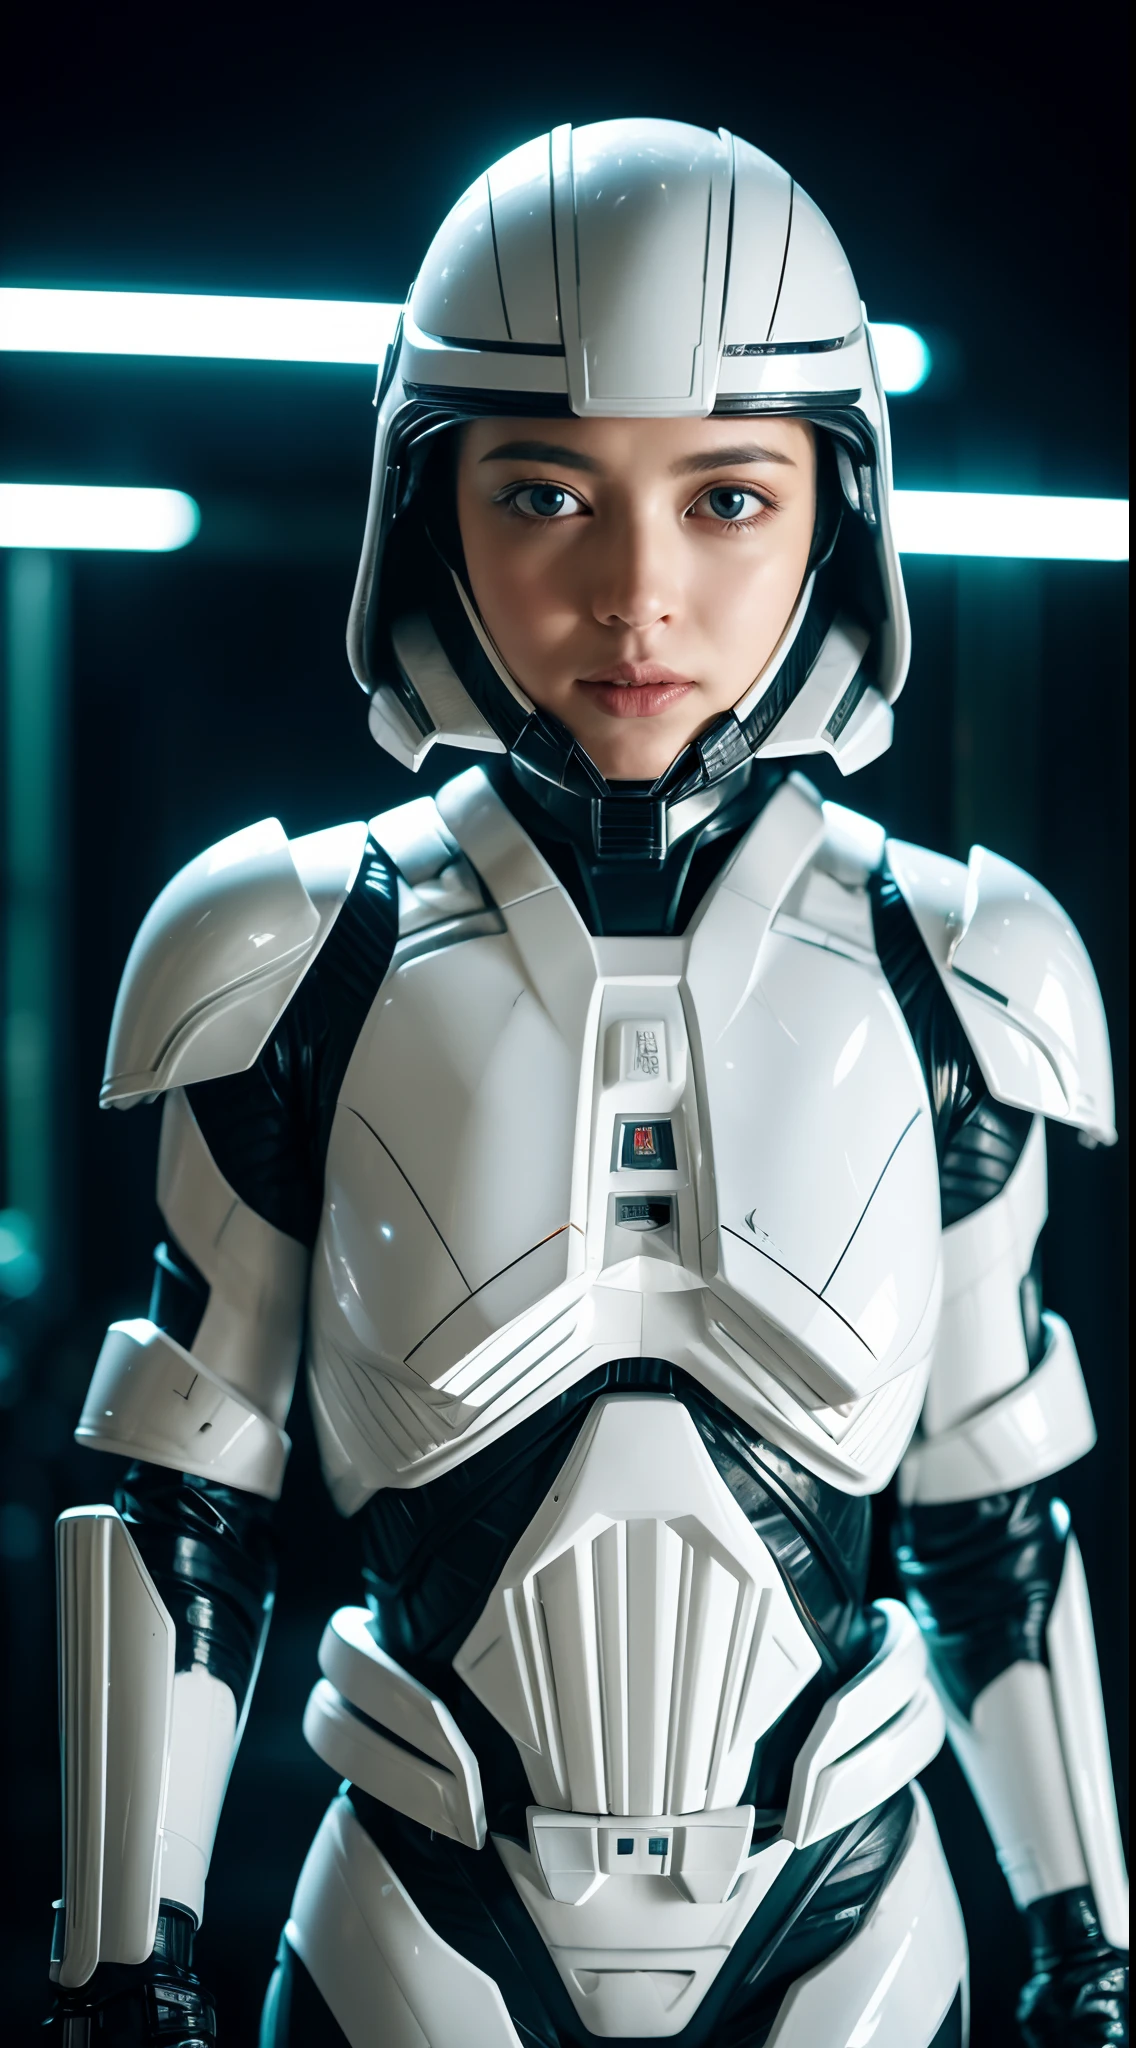 أماندا سيفريد ترتدي درع Stormtrooper الأبيض من حرب النجوم, لاقناع, لا خوذة, أضواء متوهجة, (الوضع الديناميكي), (hyper حقيقي:1.4), (حقيقي:1.3), (أفضل نوعية الجلد الملمس الحقيقي), جسم كامل, (ضوء سينمائي), بشرة مفصلة للغاية, مسام الجلد, (وجه مفصل للغاية:1.1), (عيون مفصلة للغاية:1.1), حقيقي pupils, (التشريح المثالي:1.1), (نسب مثالية:1.1), (التصوير:1.1), (photoحقيقي:1.1), الإضاءة الحجمية, الإضاءة الديناميكية, الظلال الحقيقية, (دقة عالية:1.1), التركيز الشديد, ضوء النهار, (حقيقي, hyperحقيقي:1.4), معقد, تفاصيل عالية, دراماتيكي, تشتت تحت السطح, عمق كبير من الميدان, واضح, مصقول, شحذ, ((حادة كاملة)), (سخيفة للغاية),8K اتش دي ار